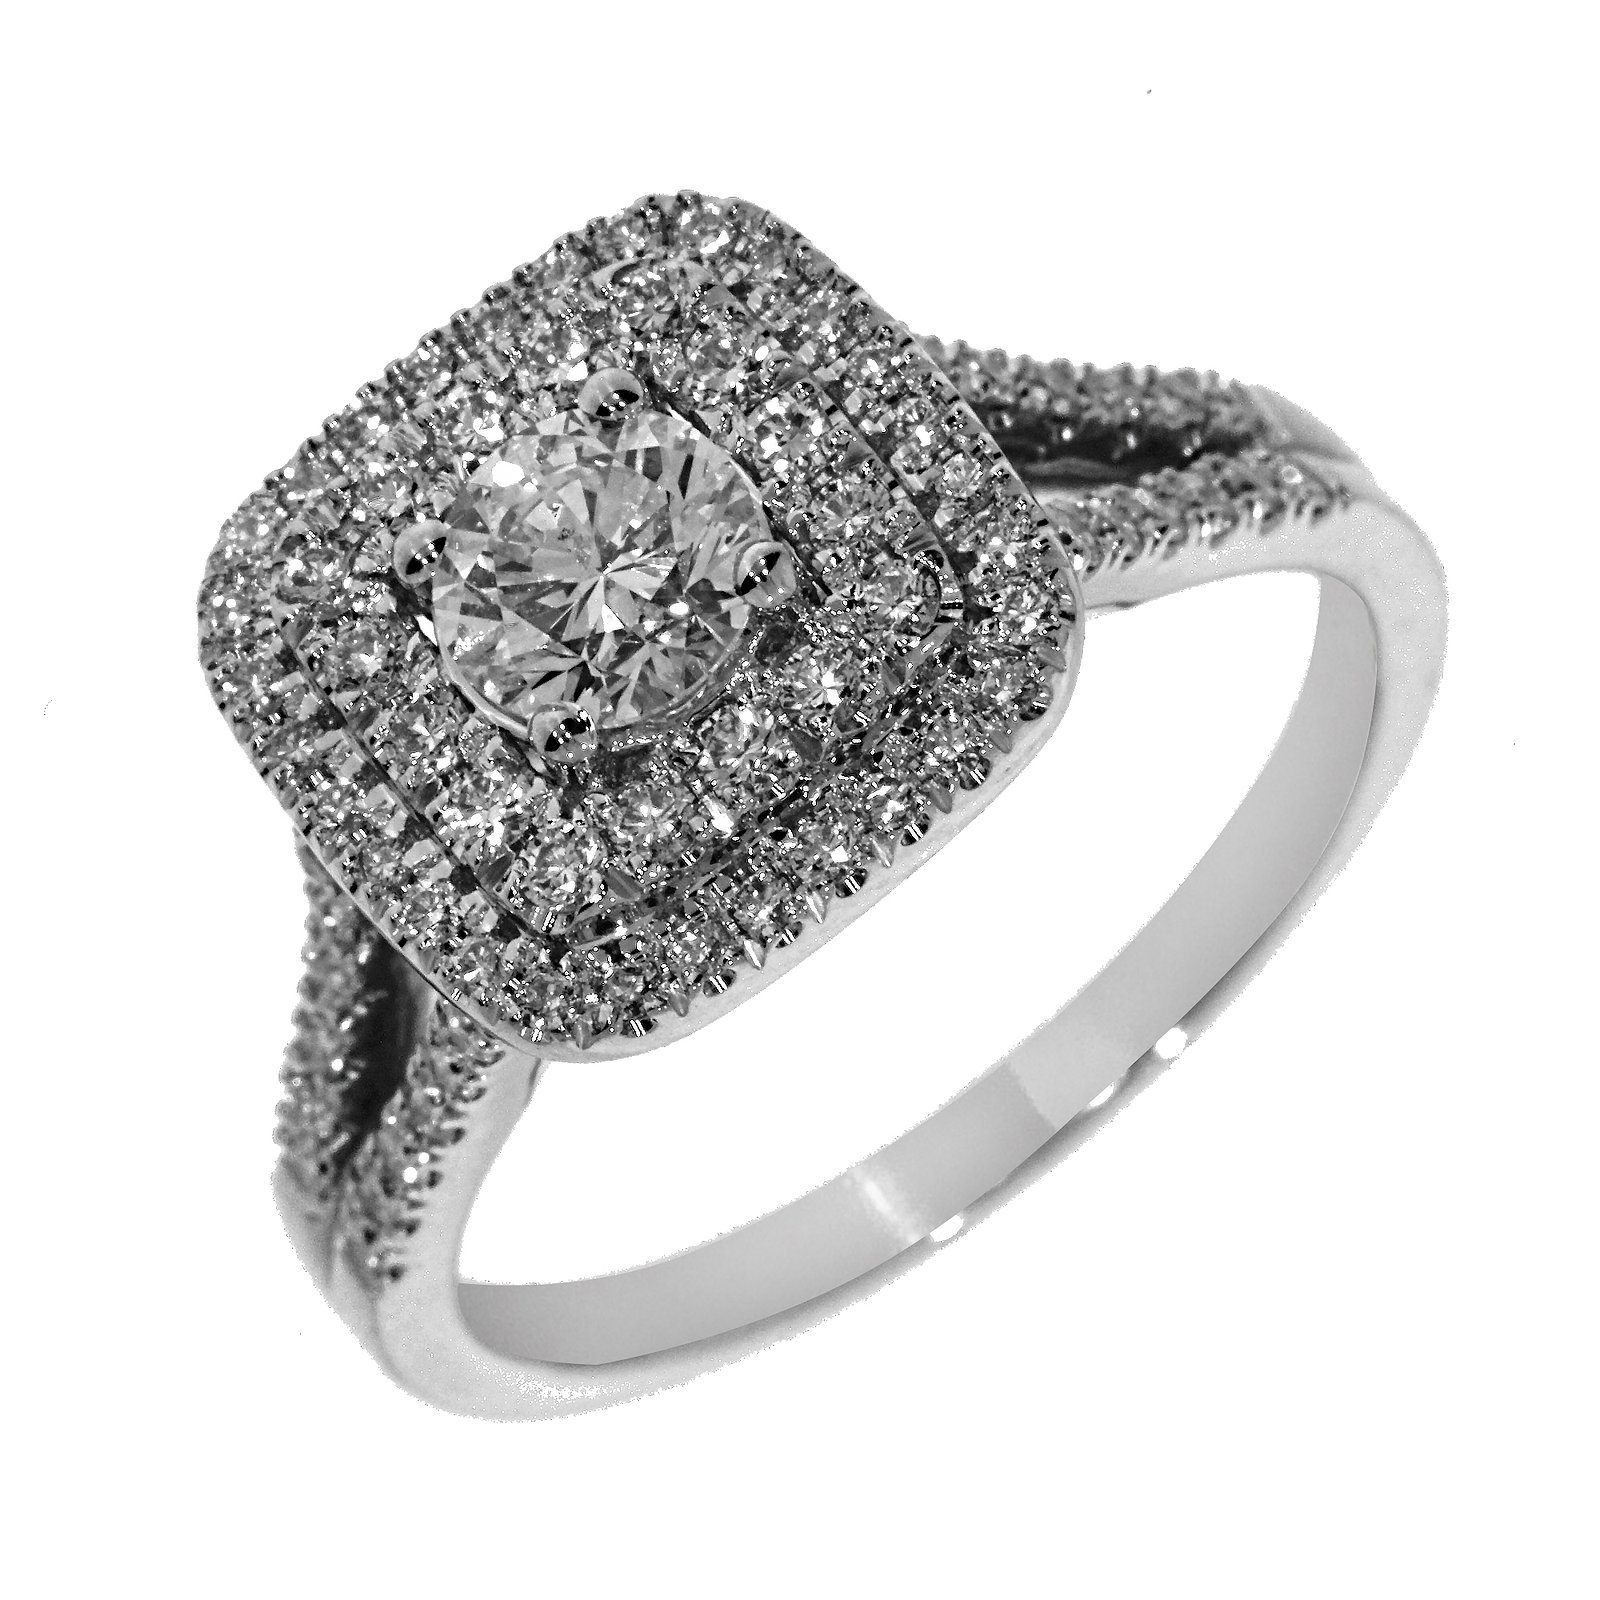 Кольцо с прямоугольными бриллиантами: стильное украшение для особого случая